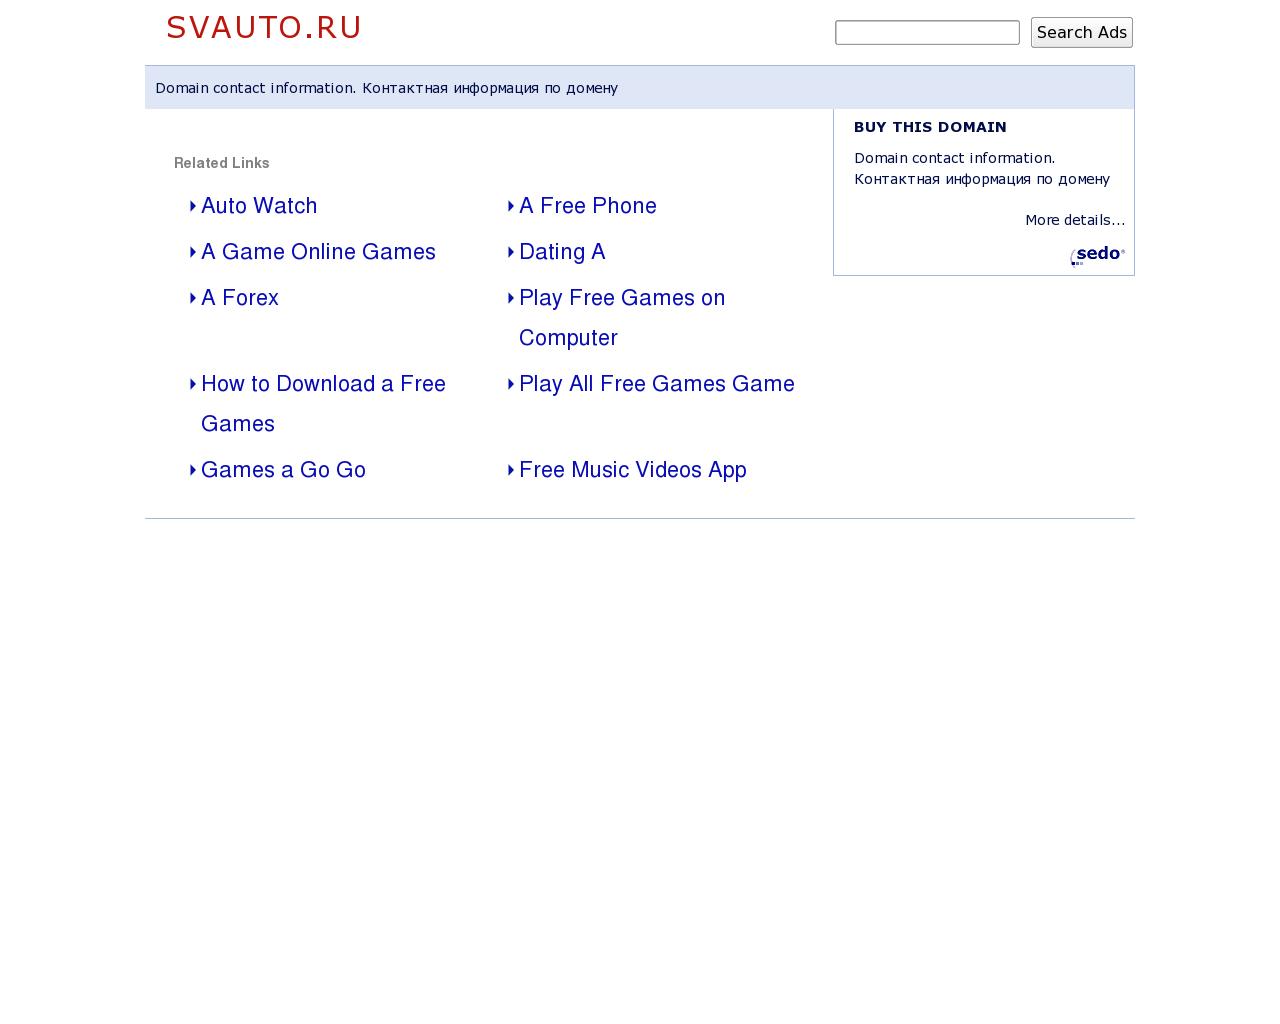 Изображение сайта svauto.ru в разрешении 1280x1024